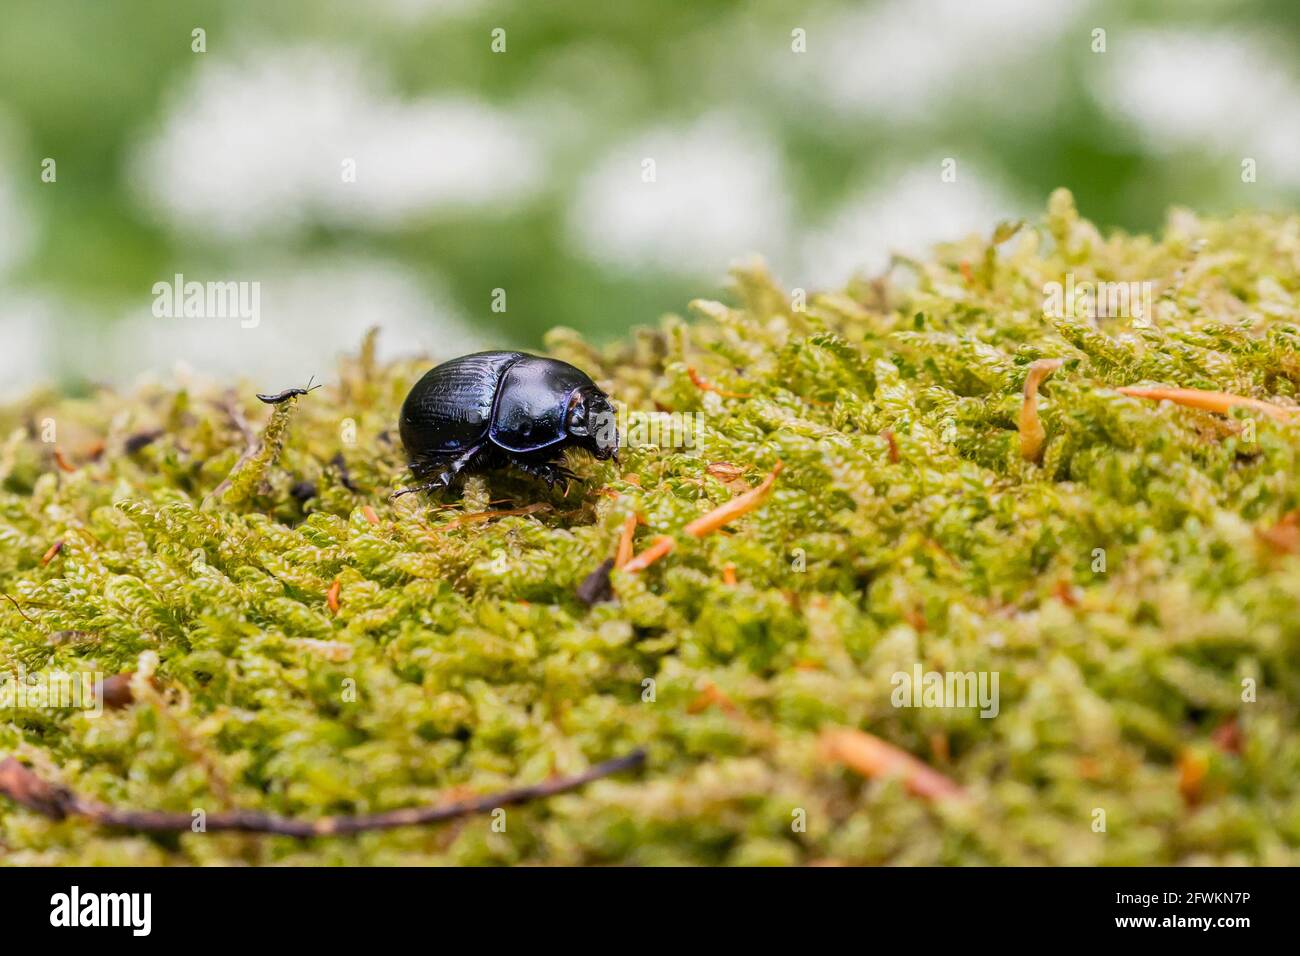 Un pequeño escarabajo negro (Geotrpes stercorarius) camina sobre musgo en su hábitat natural Foto de stock